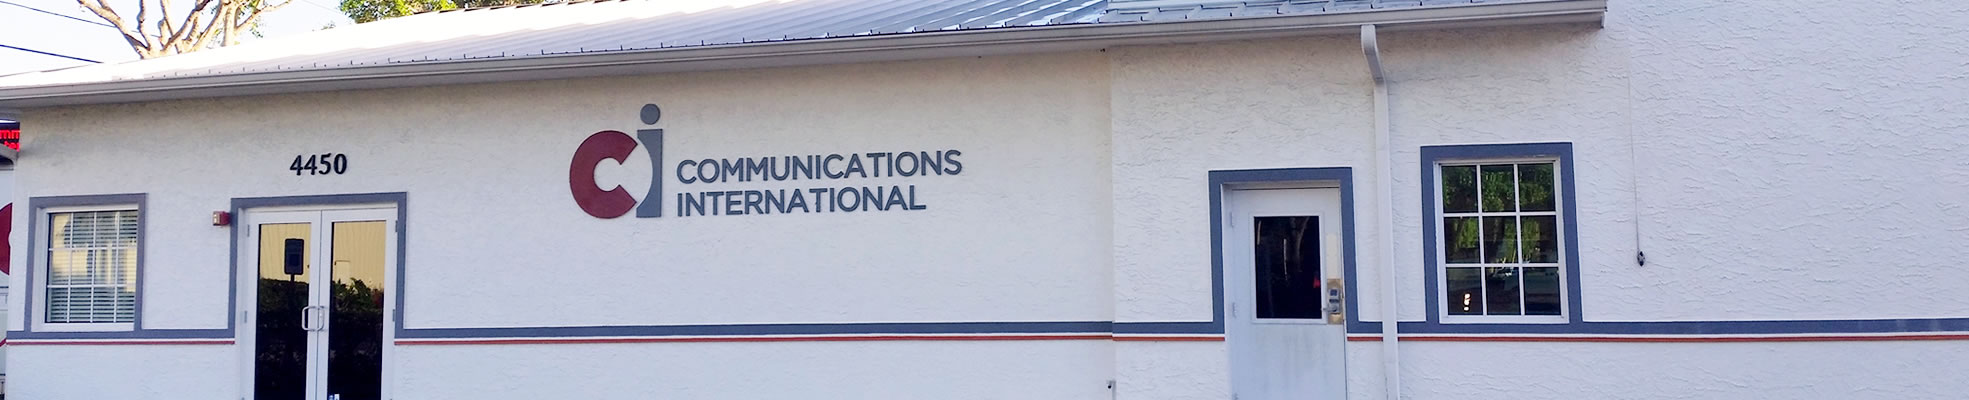 Communications International (Ci)